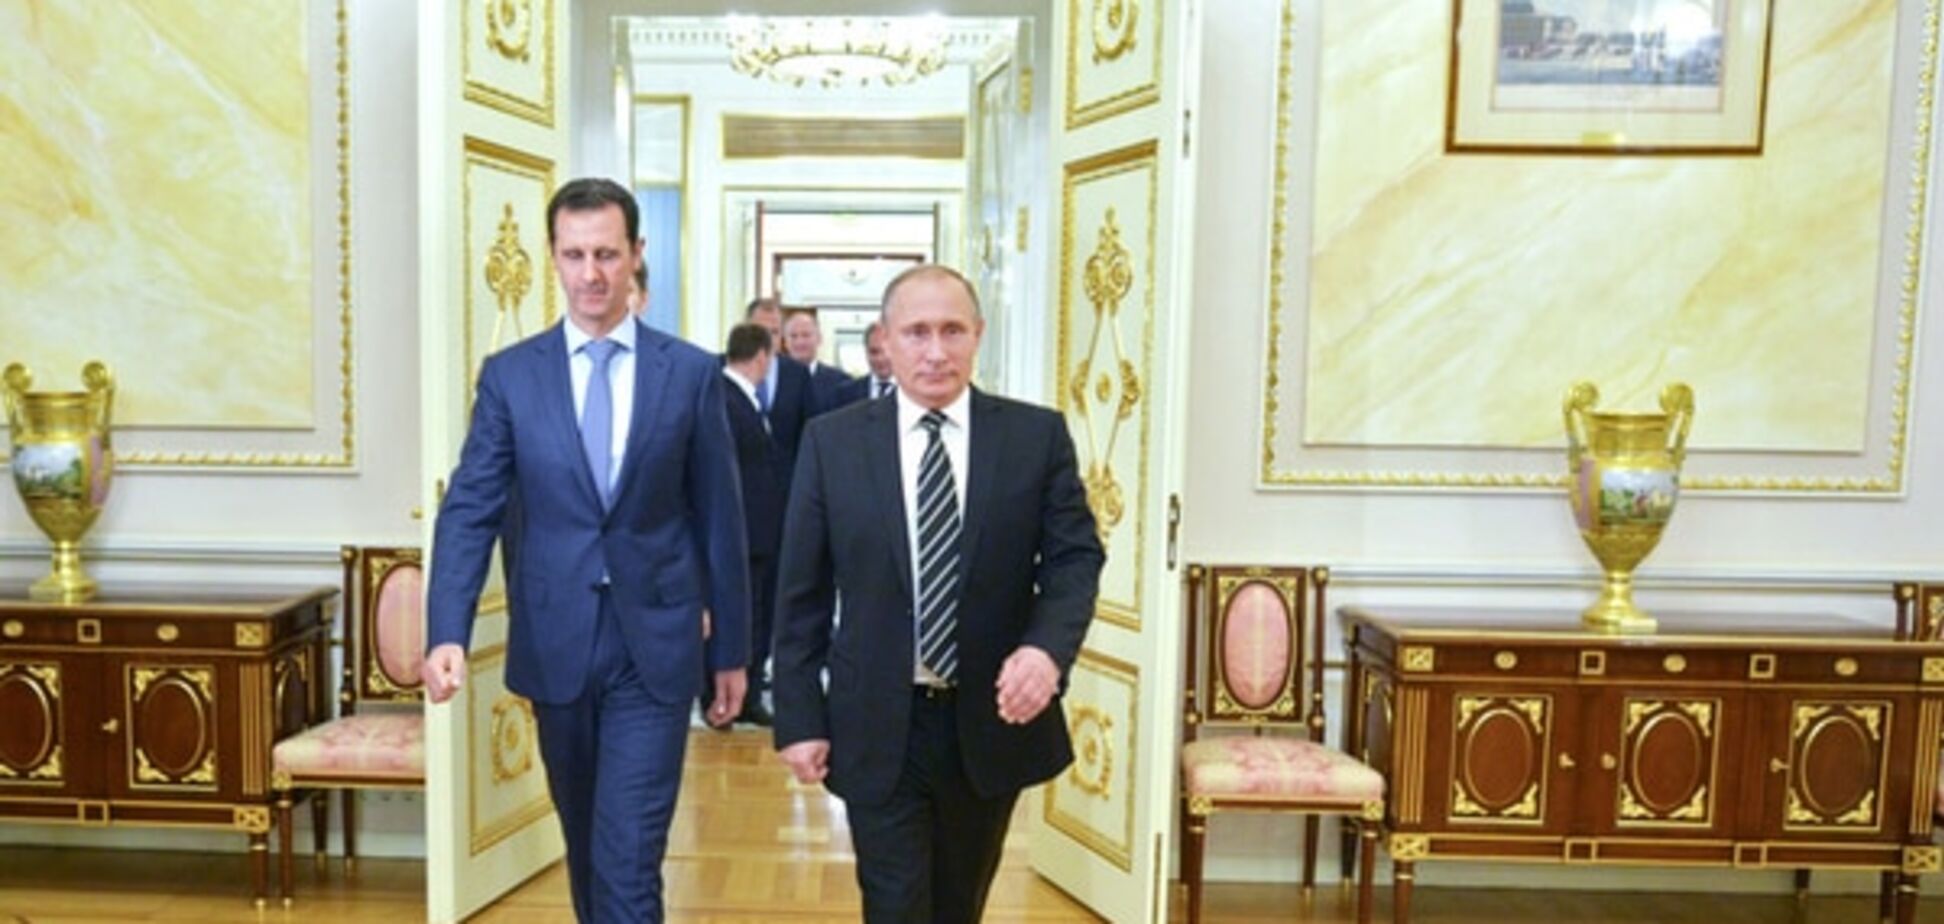 ЗМІ: зустріч Путіна й Асада може означати кінець війни в Сирії